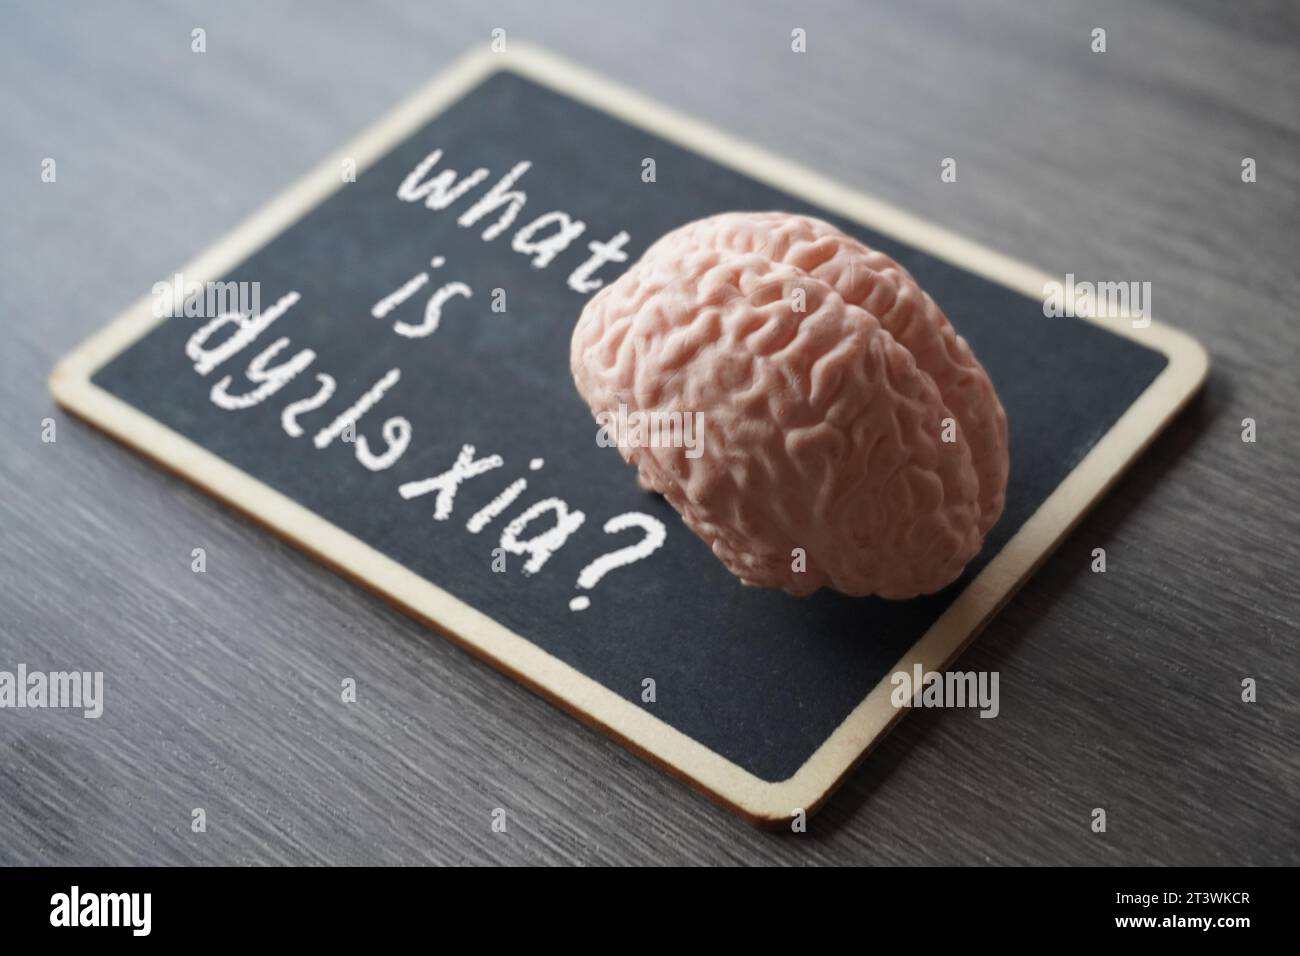 Concetto medico e sanitario. Immagine di primo piano del modello cerebrale umano e lavagna con testo COS'È LA DISLESSIA? Foto Stock